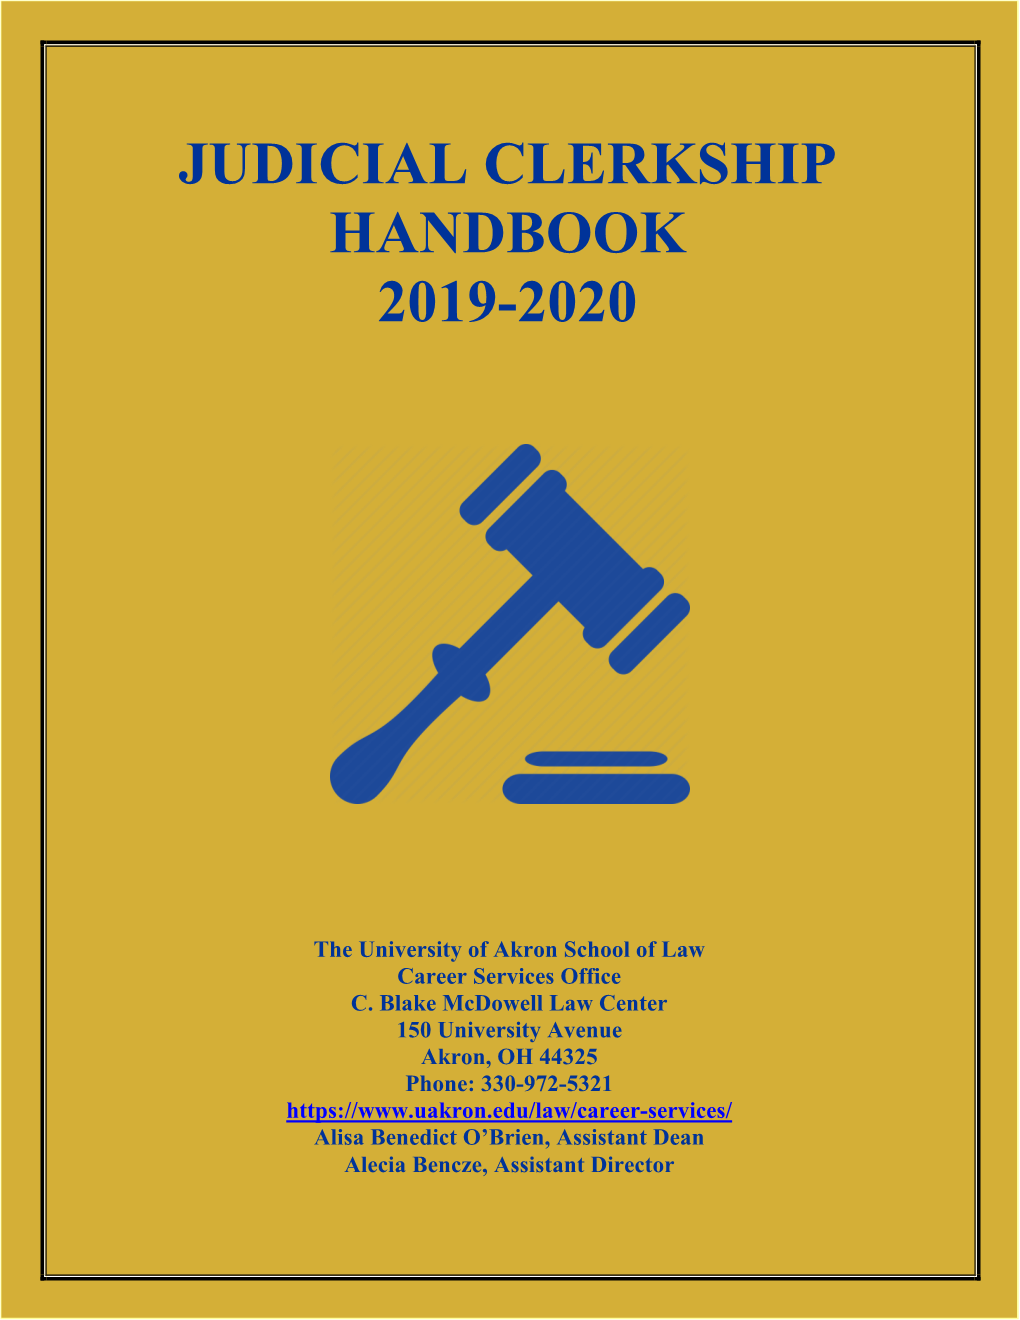 Judicial Clerkship Handbook 2019-2020